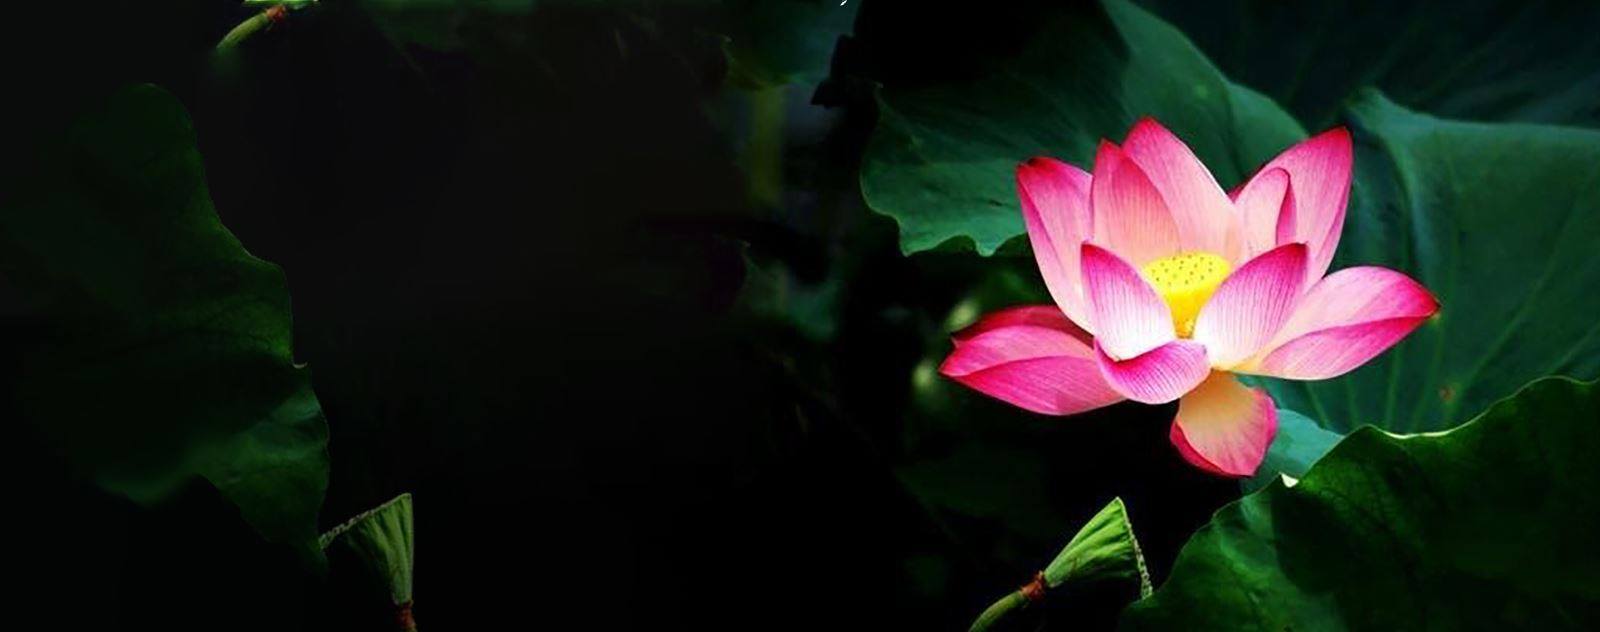 fleur de lotus nénuphar